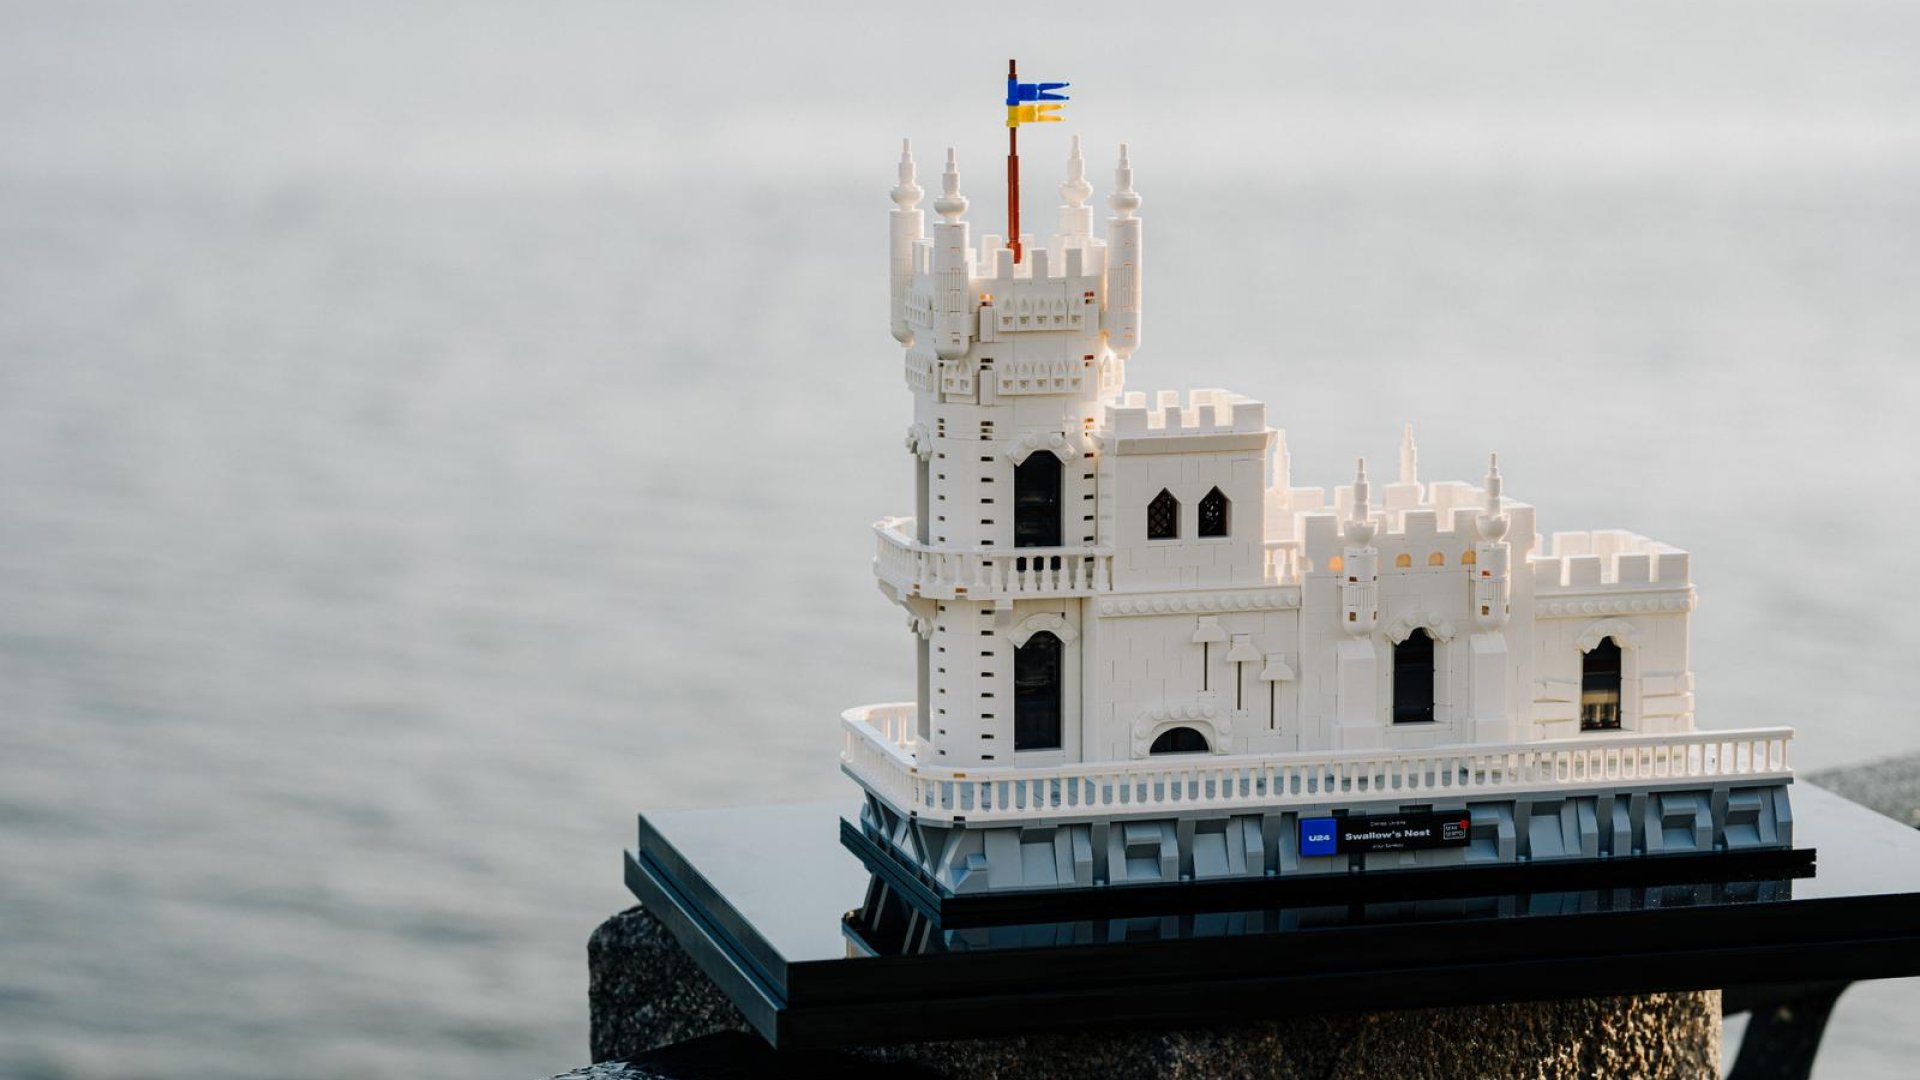 Сьогодні замок нагадує українцям про рідні серцю краєвиди Криму та Чорноморського узбережжя